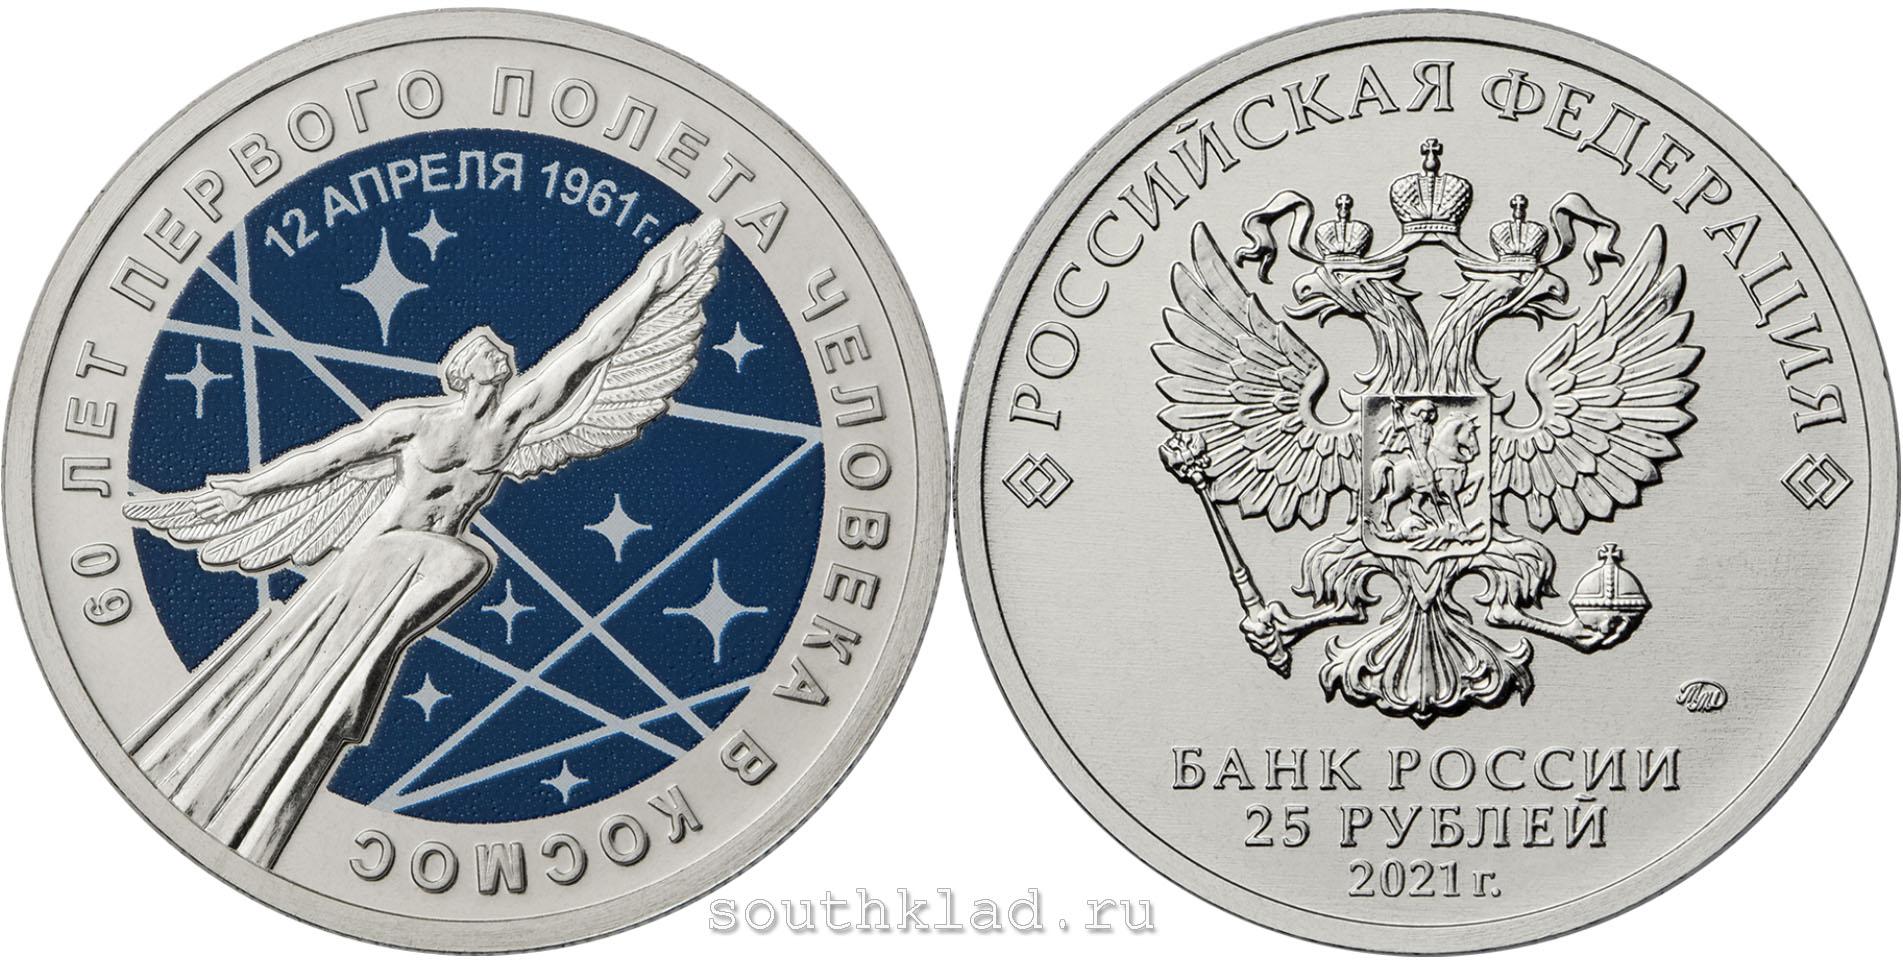 Монета 60 лет полета в космос 2021